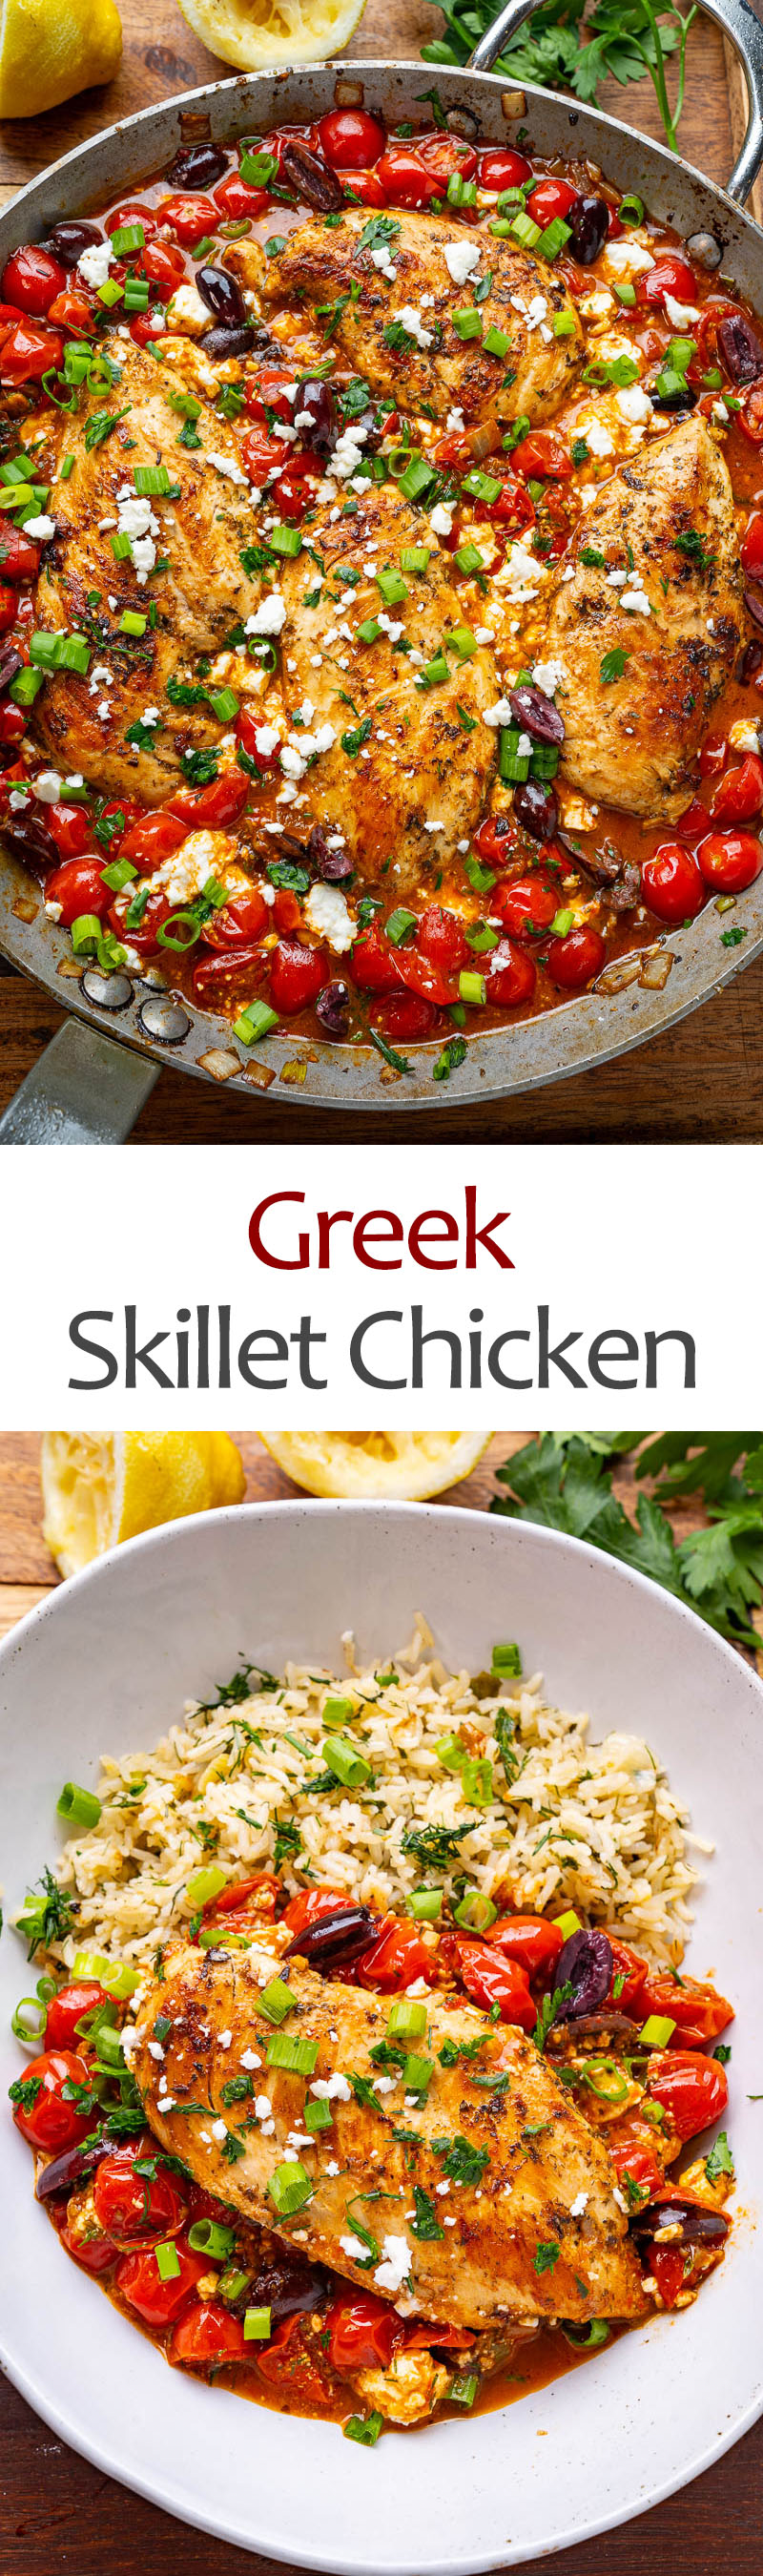 Greek Skillet Chicken